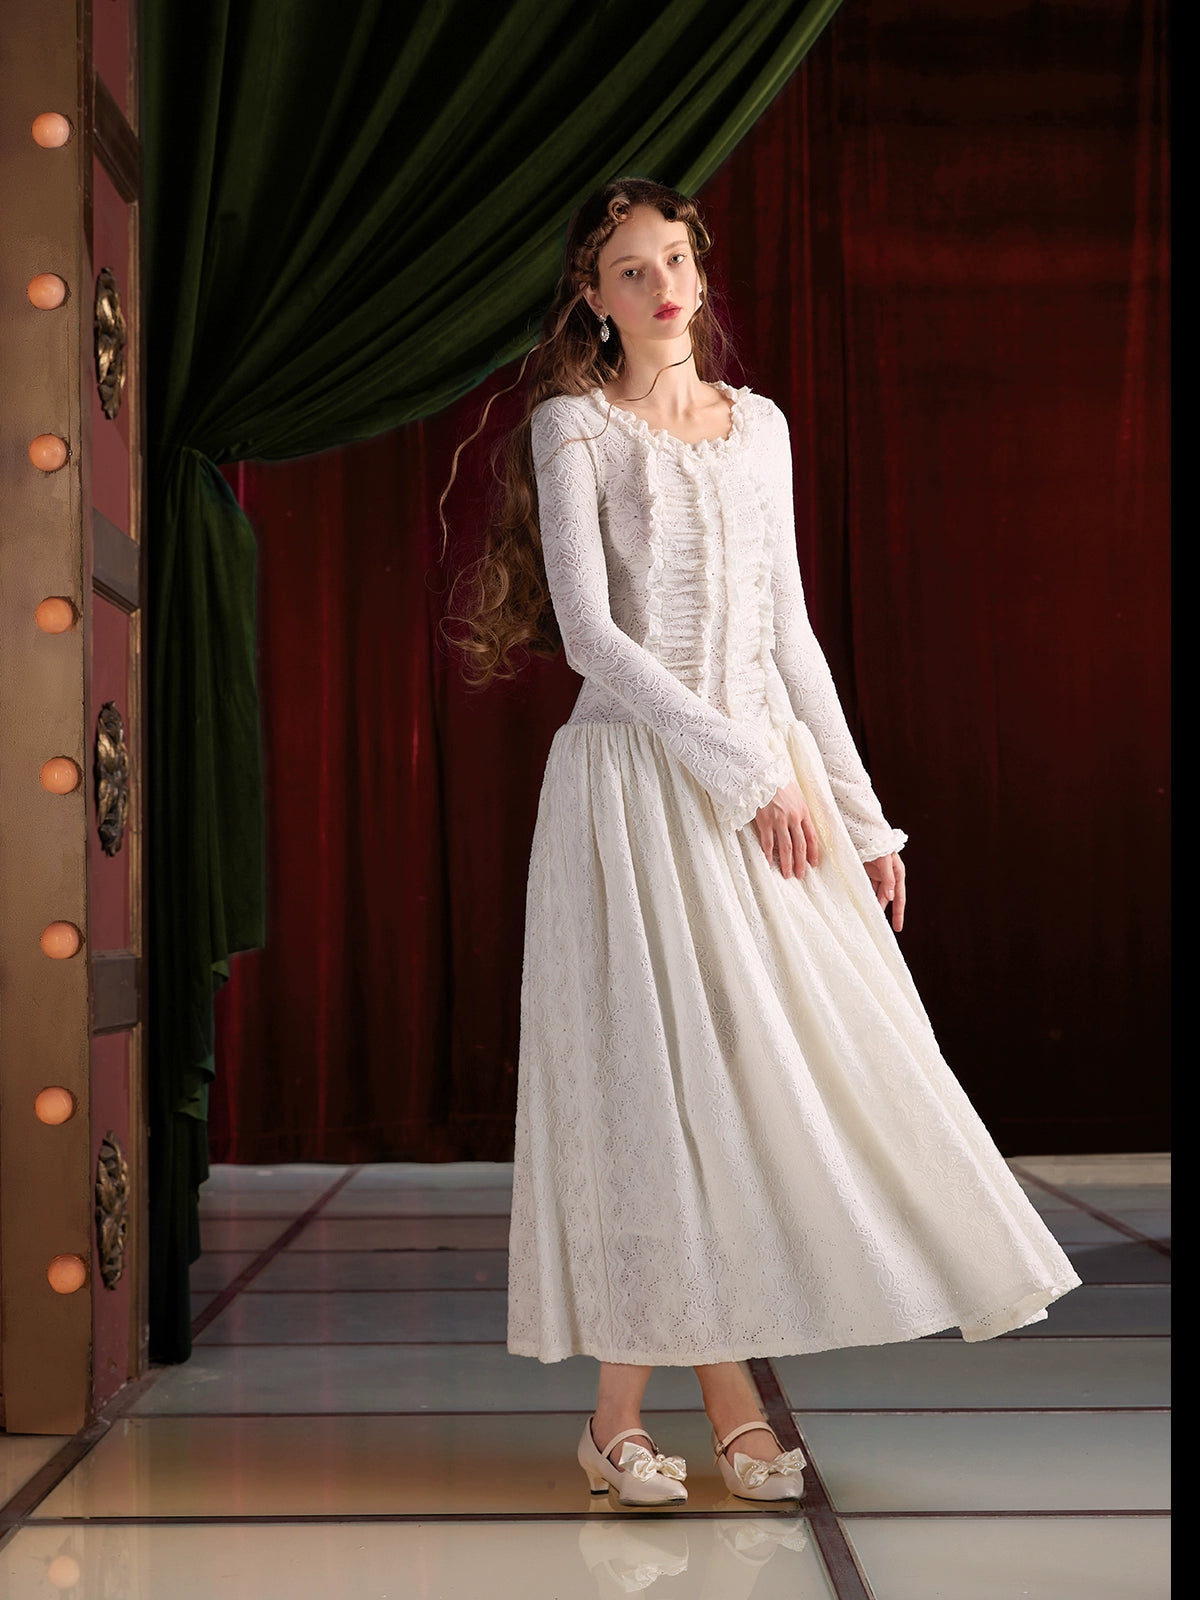 New 2022 V Neck Velvet Long Sleeve Occasion Dress Elegant & Glamorous For  Prom & Special Occasions From Longzhiwen, $100.38 | DHgate.Com